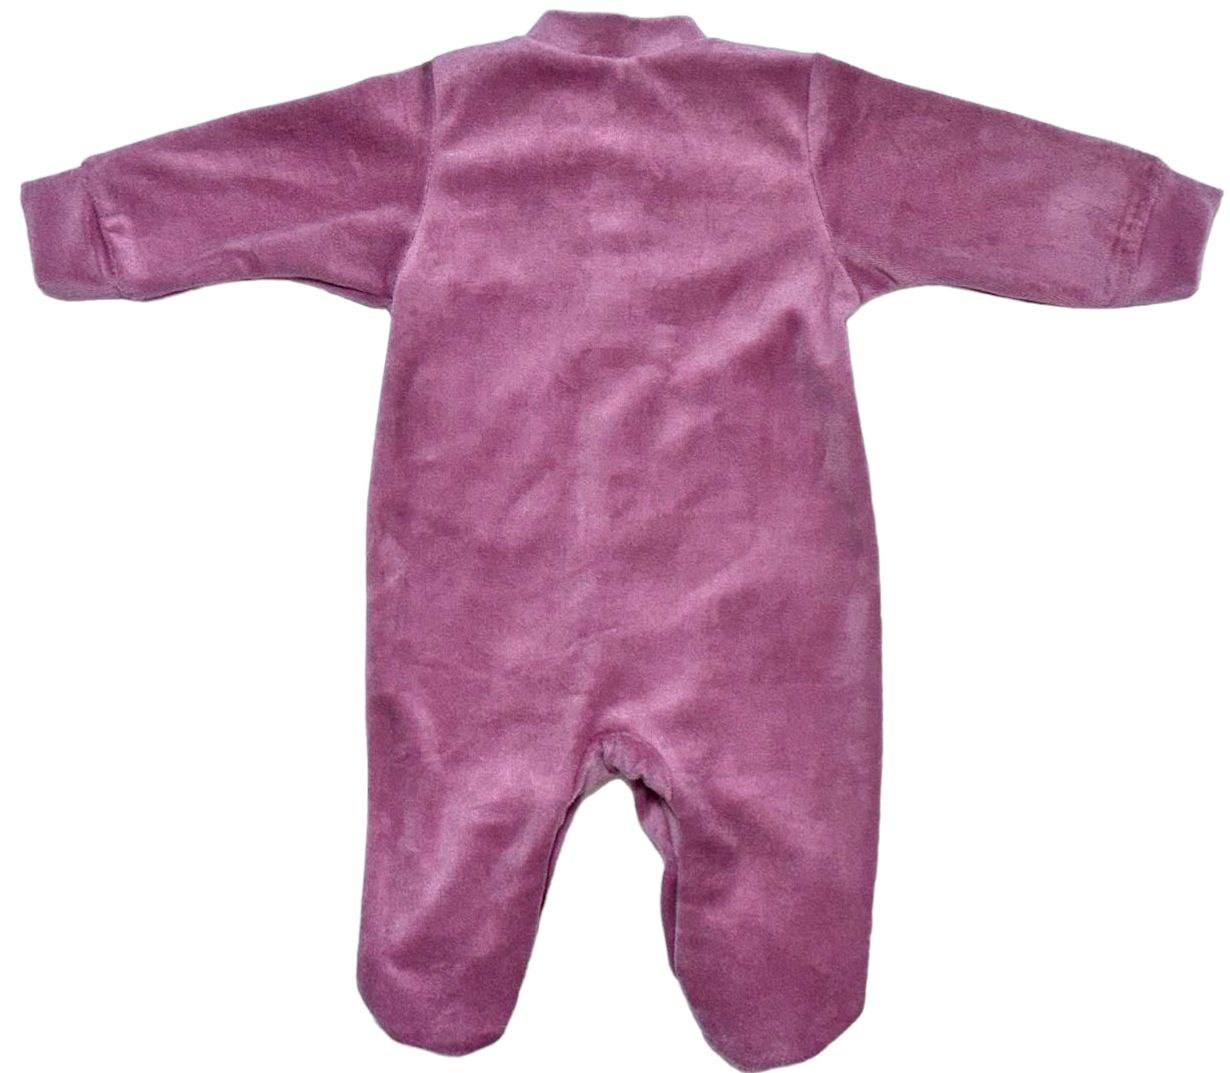 Комбинезон «ЧИЖИК» сливового цвета с вышивкой велюр, Сливовый, 9-12 месяцев, 80см